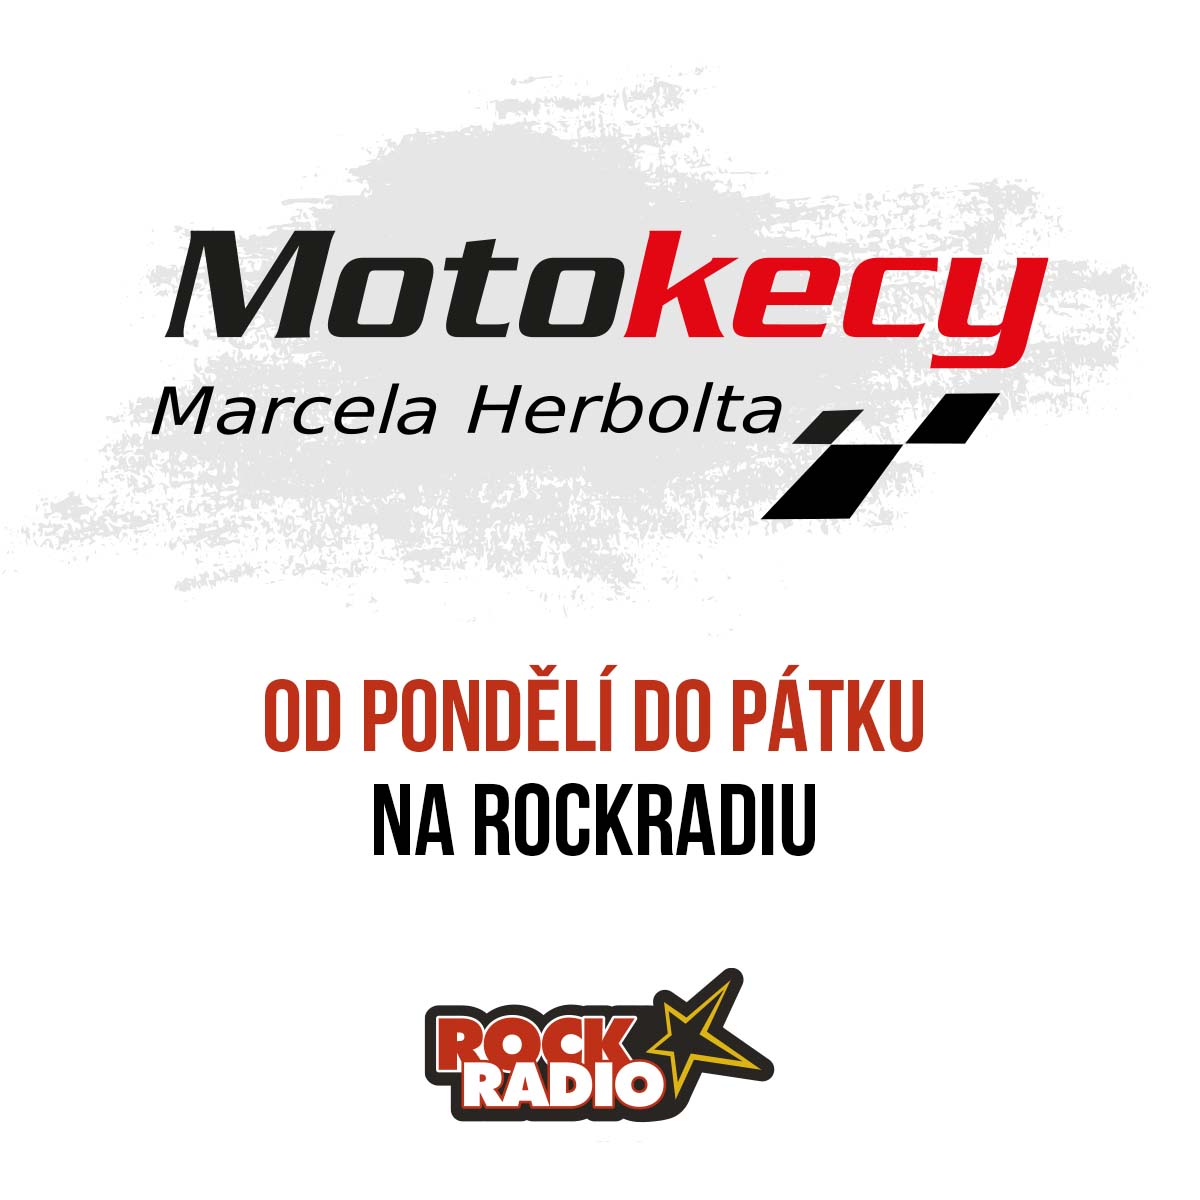 Motokecy Marcela Herbolta na čtvrtek 05 října